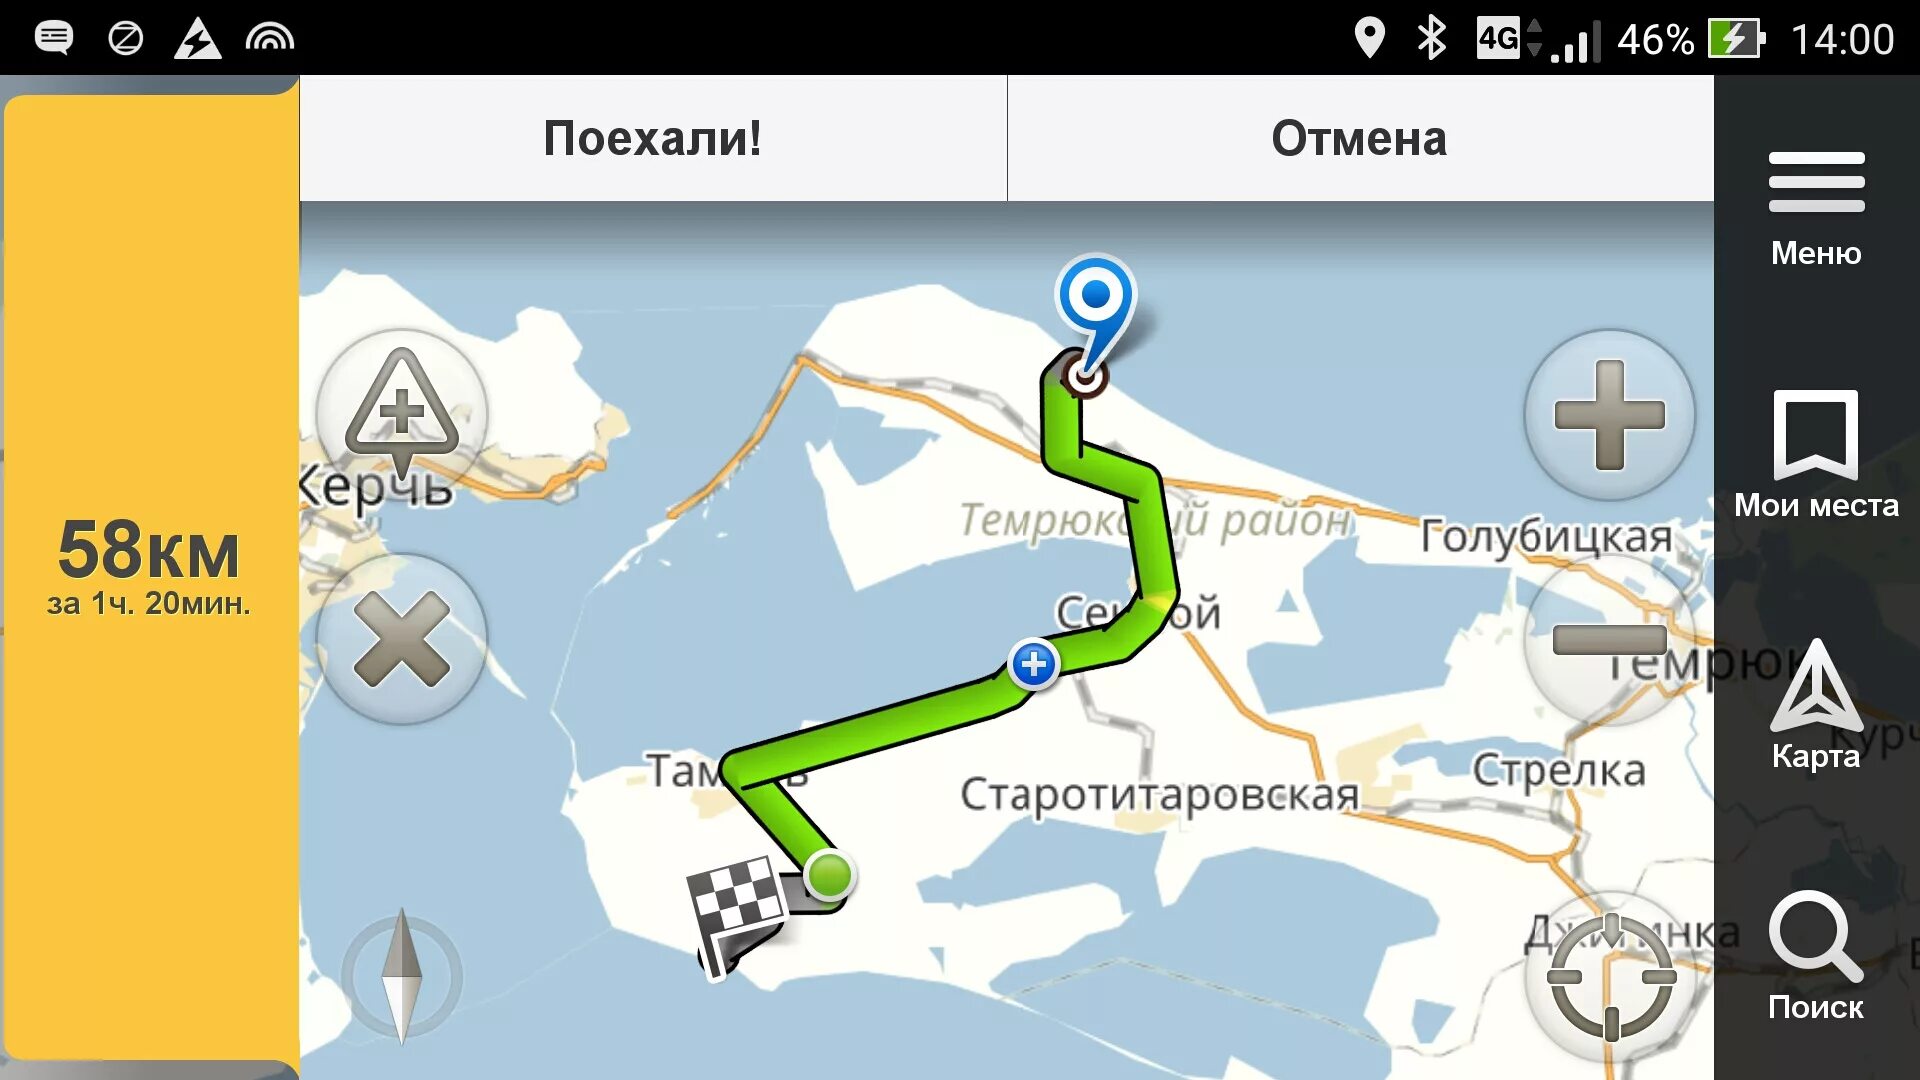 Станция 58 км. Маяк 58 км Приморского шоссе.